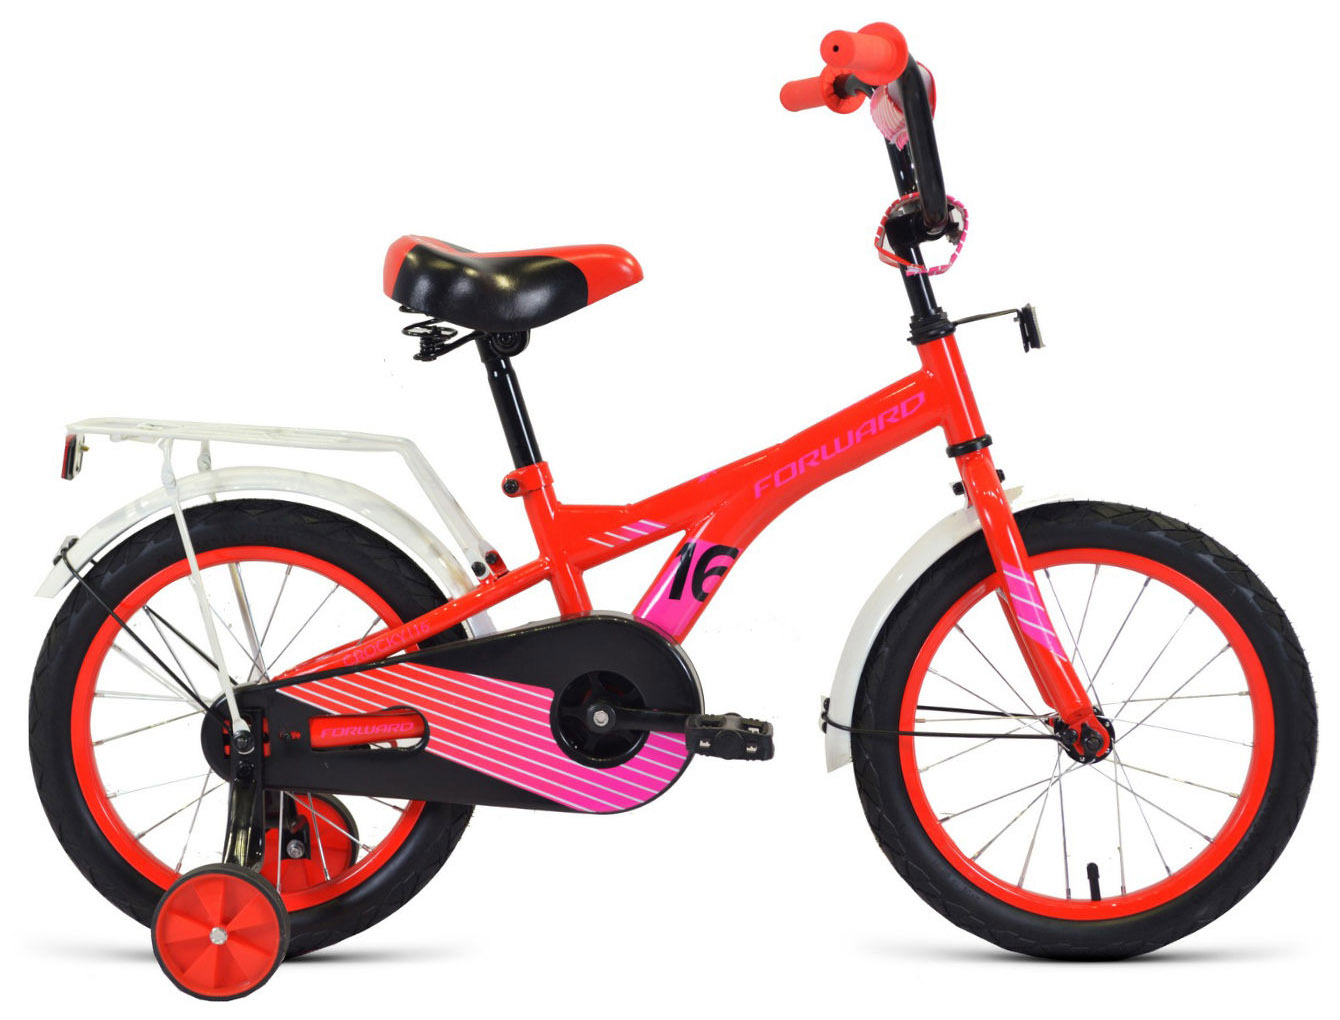  Отзывы о Детском велосипеде Forward Crocky 18 2020